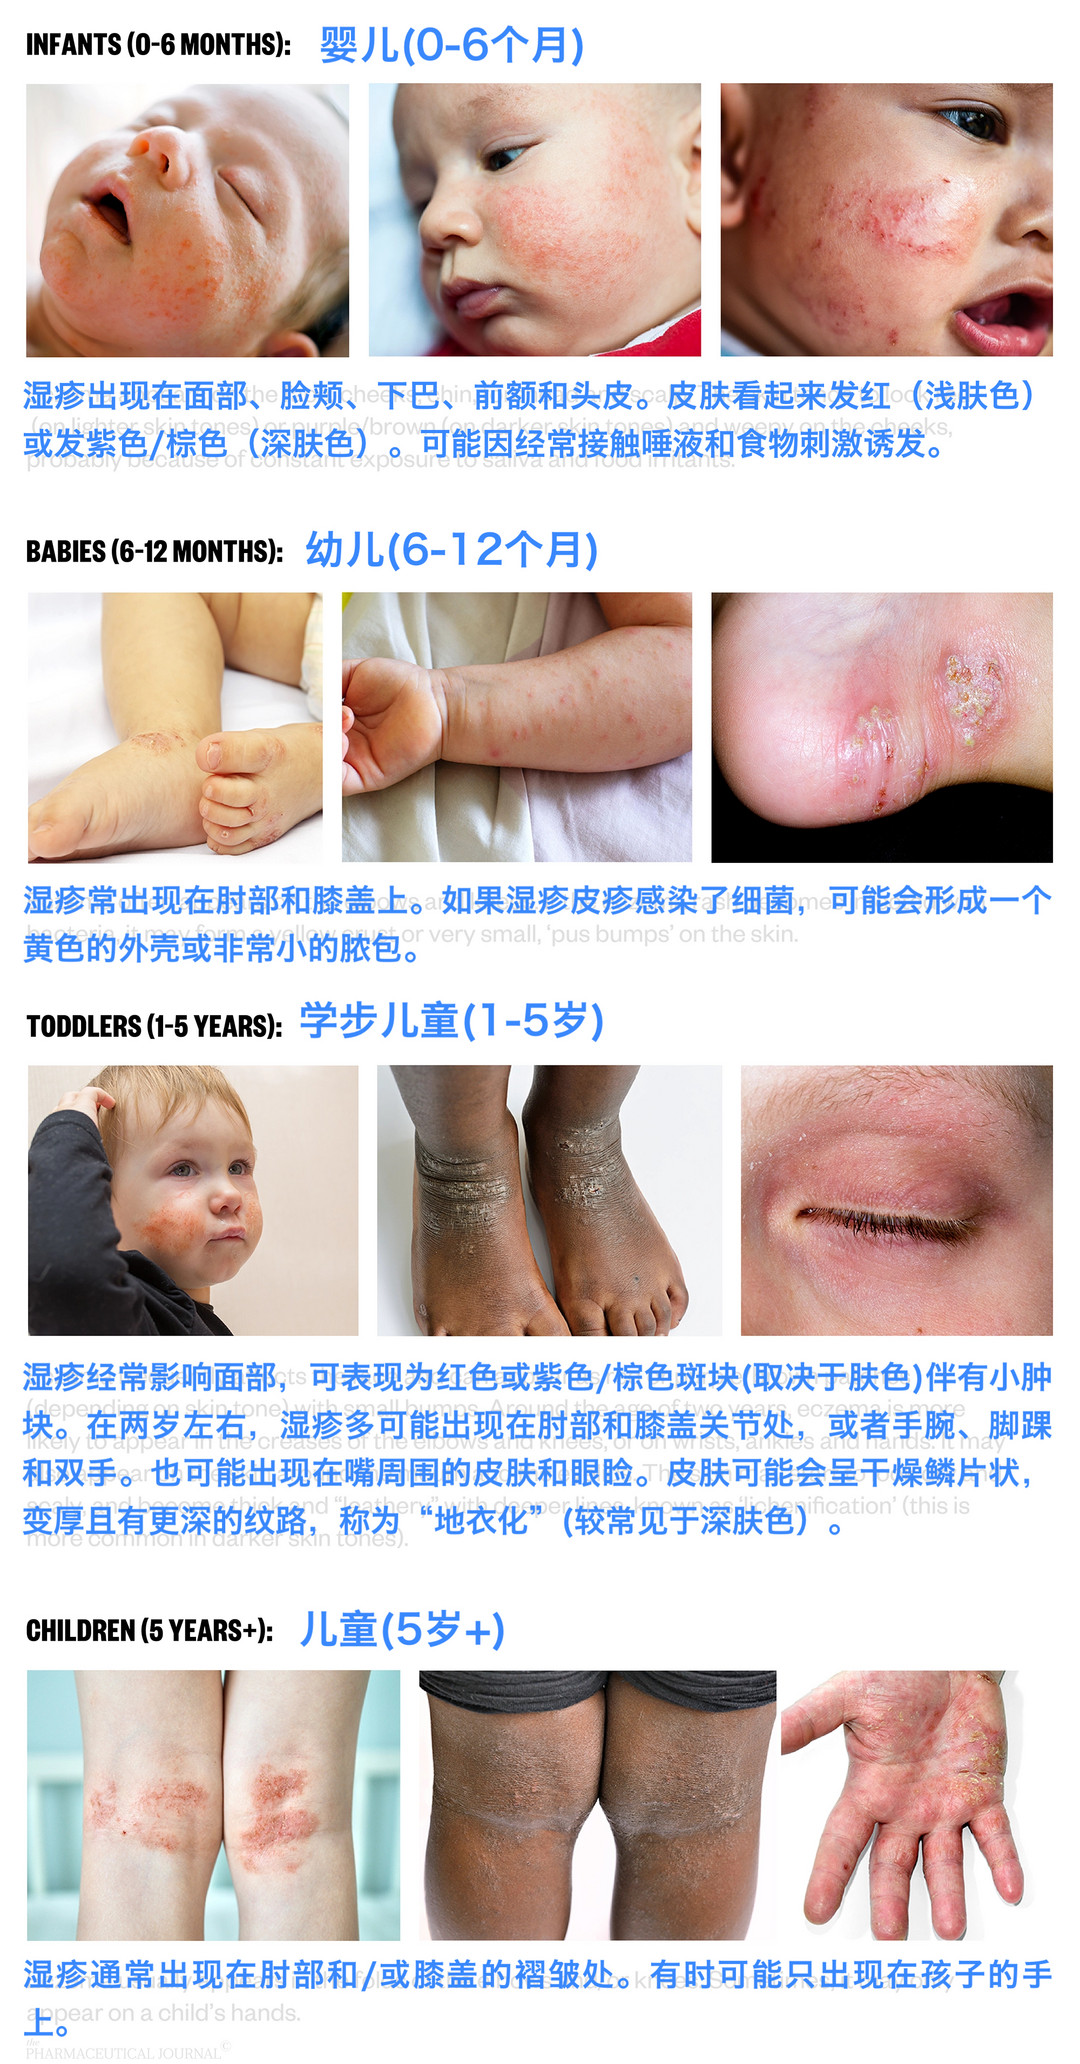 图源:Managing childhood eczema: a visual guide